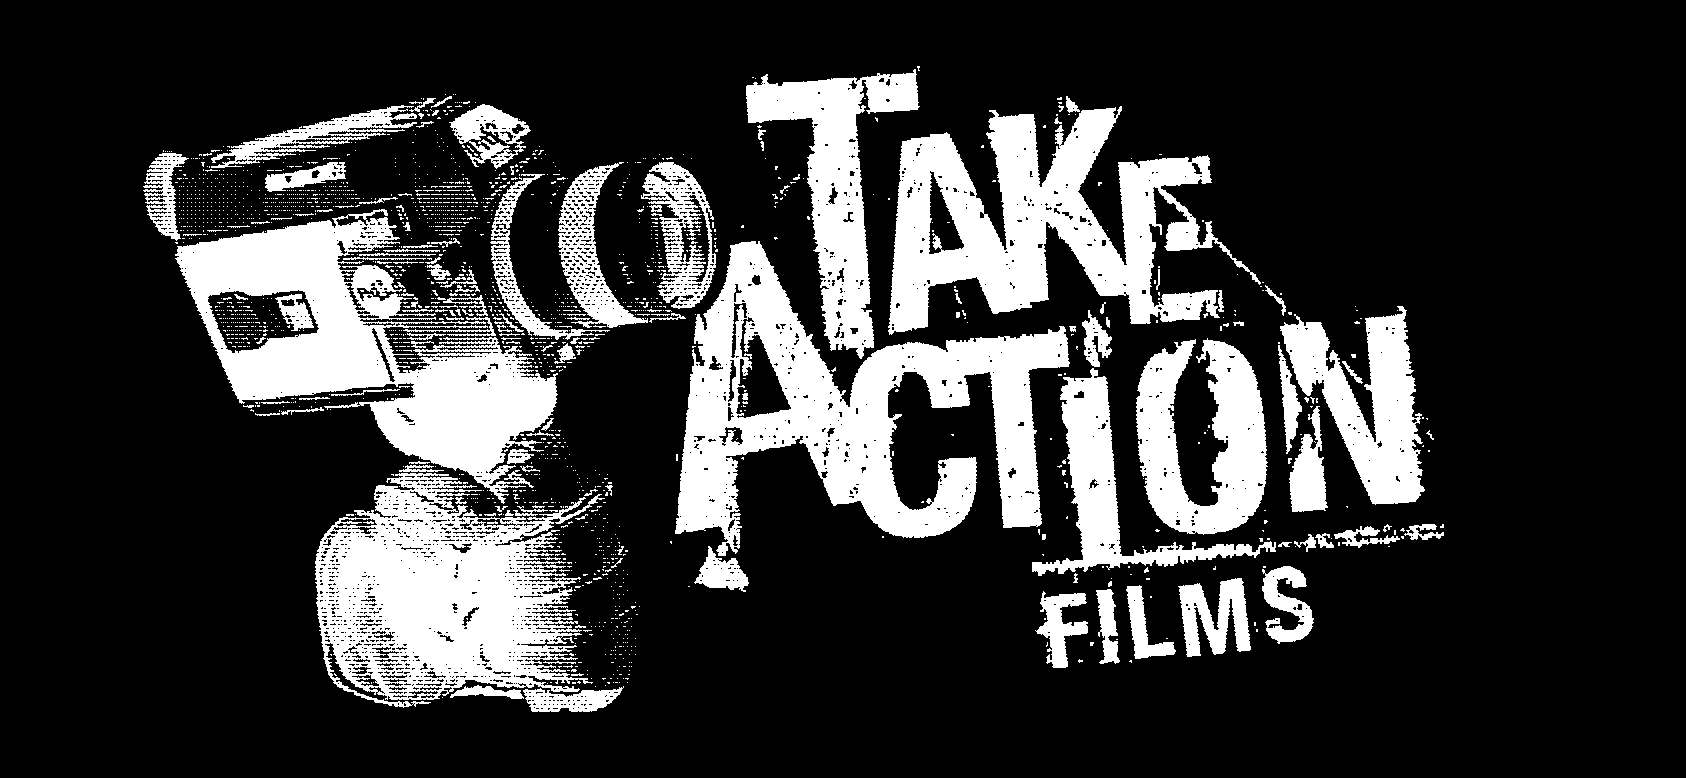 (c) Takeactionfilms.com